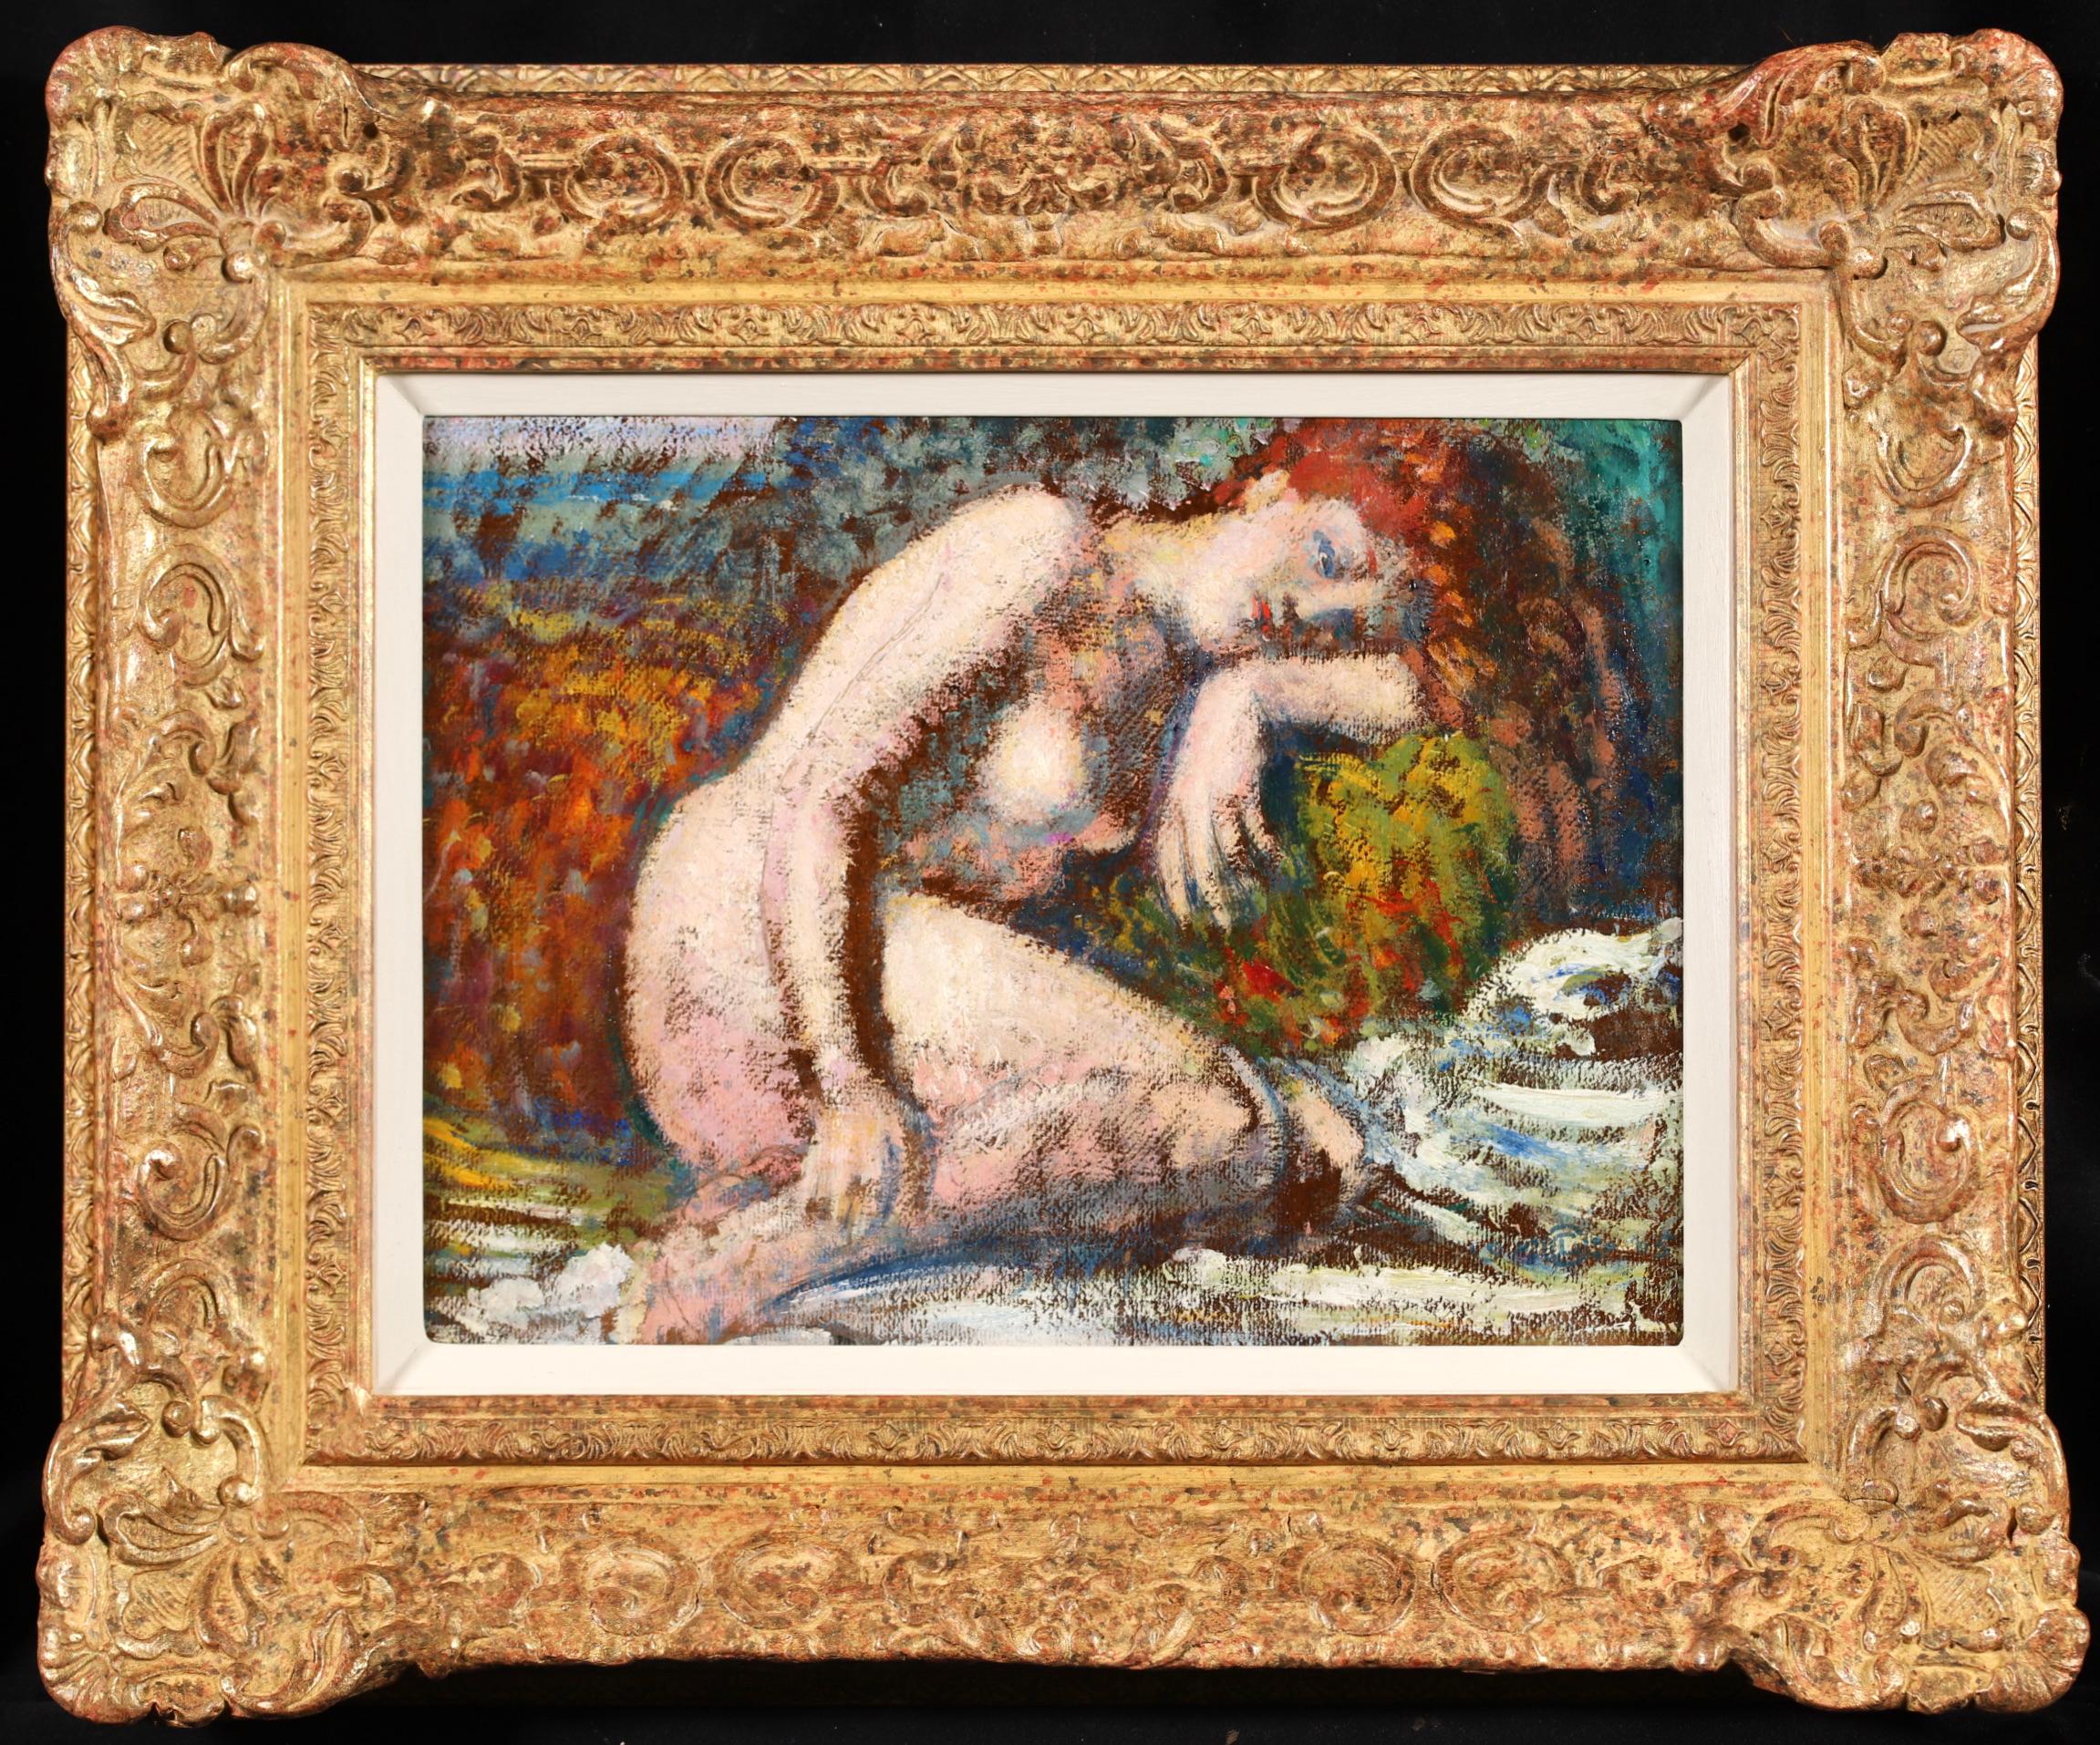 Huile sur panneau signée et titrée, nu, circa 1905, du peintre néo-impressionniste belge Georges Lemmen. L'œuvre intitulée "Rêverie" représente une femme aux cheveux roux qui s'agenouille et repose sa tête sur son bras.

Signature :
Signée en bas à